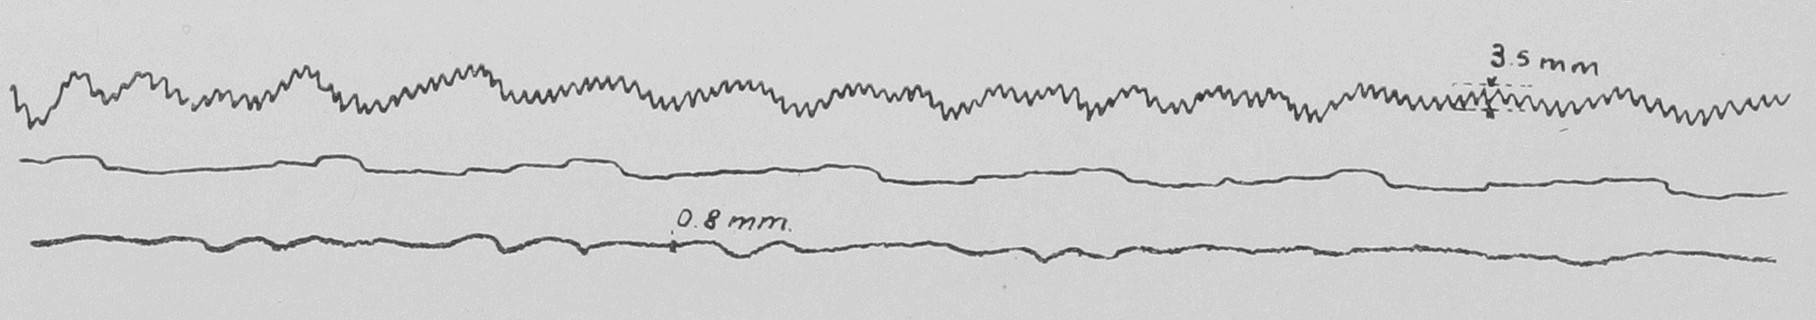 Фиг. 7.Миноносецъ S. 42, 250 оборотовъ.Верхнія кривыя на всѣхъ фигурахъ показываютъ вертикальныя вибраціи, нижнія — горизонтальныя; среднія кривыя — время въ секундах.